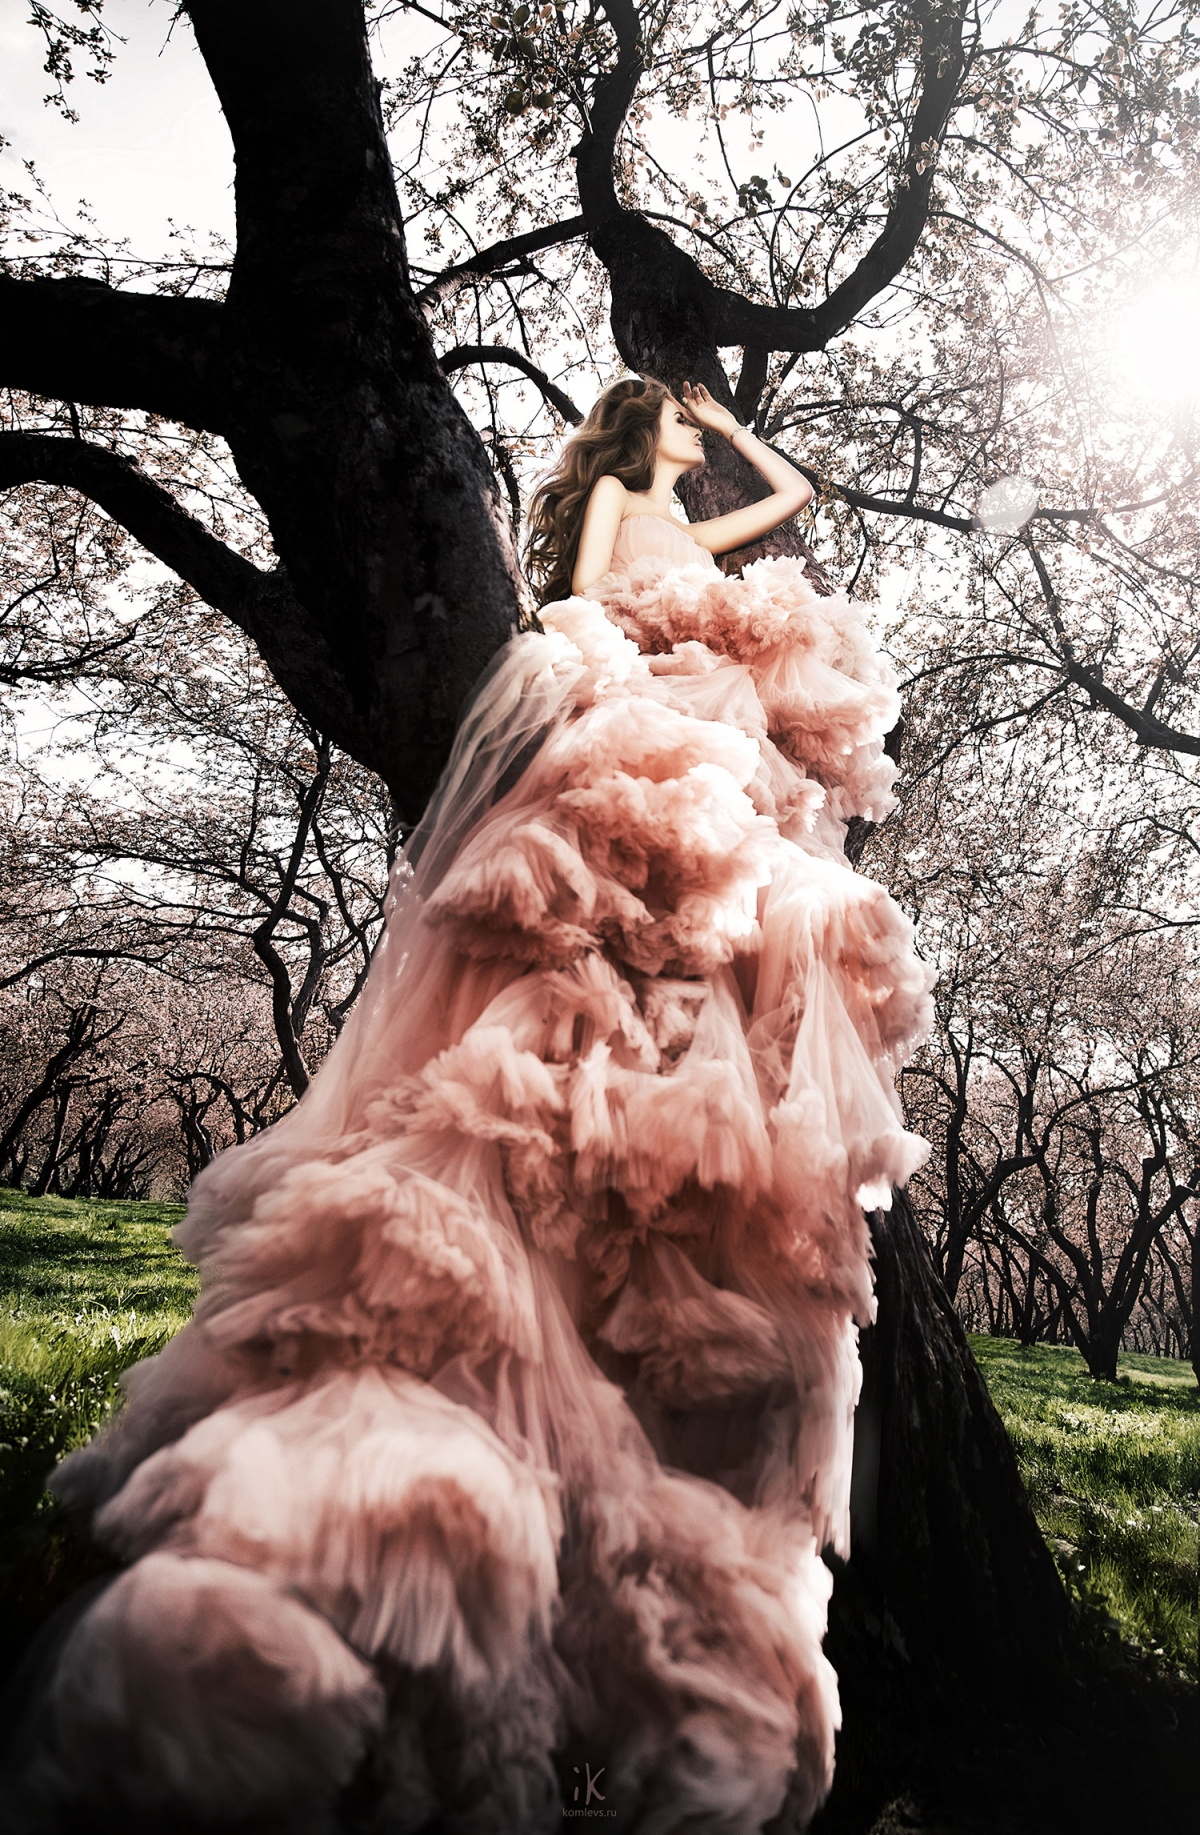 фотосессия девушки на природе в платье на дереве в Коломенском парке +7 926 222 8521 #komlevsphoto Komlevs.ru Москва